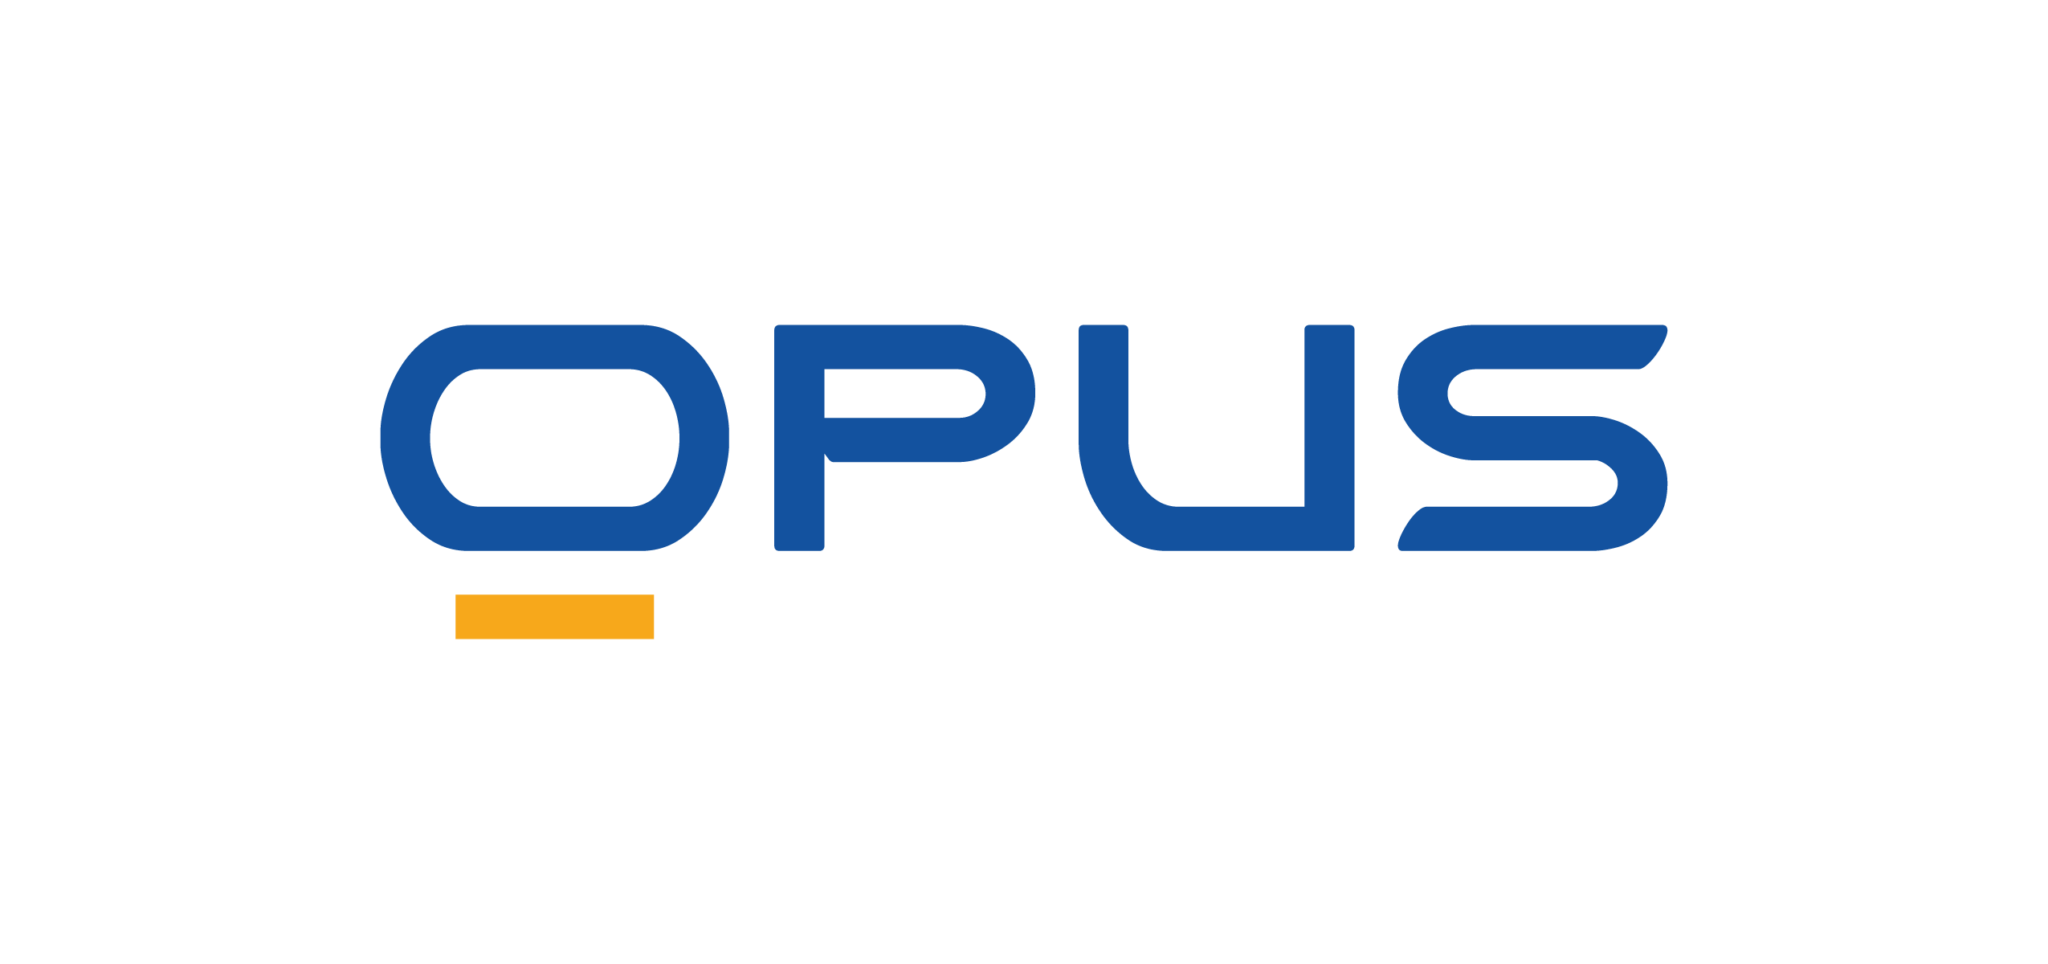 Opus logo - fintech news